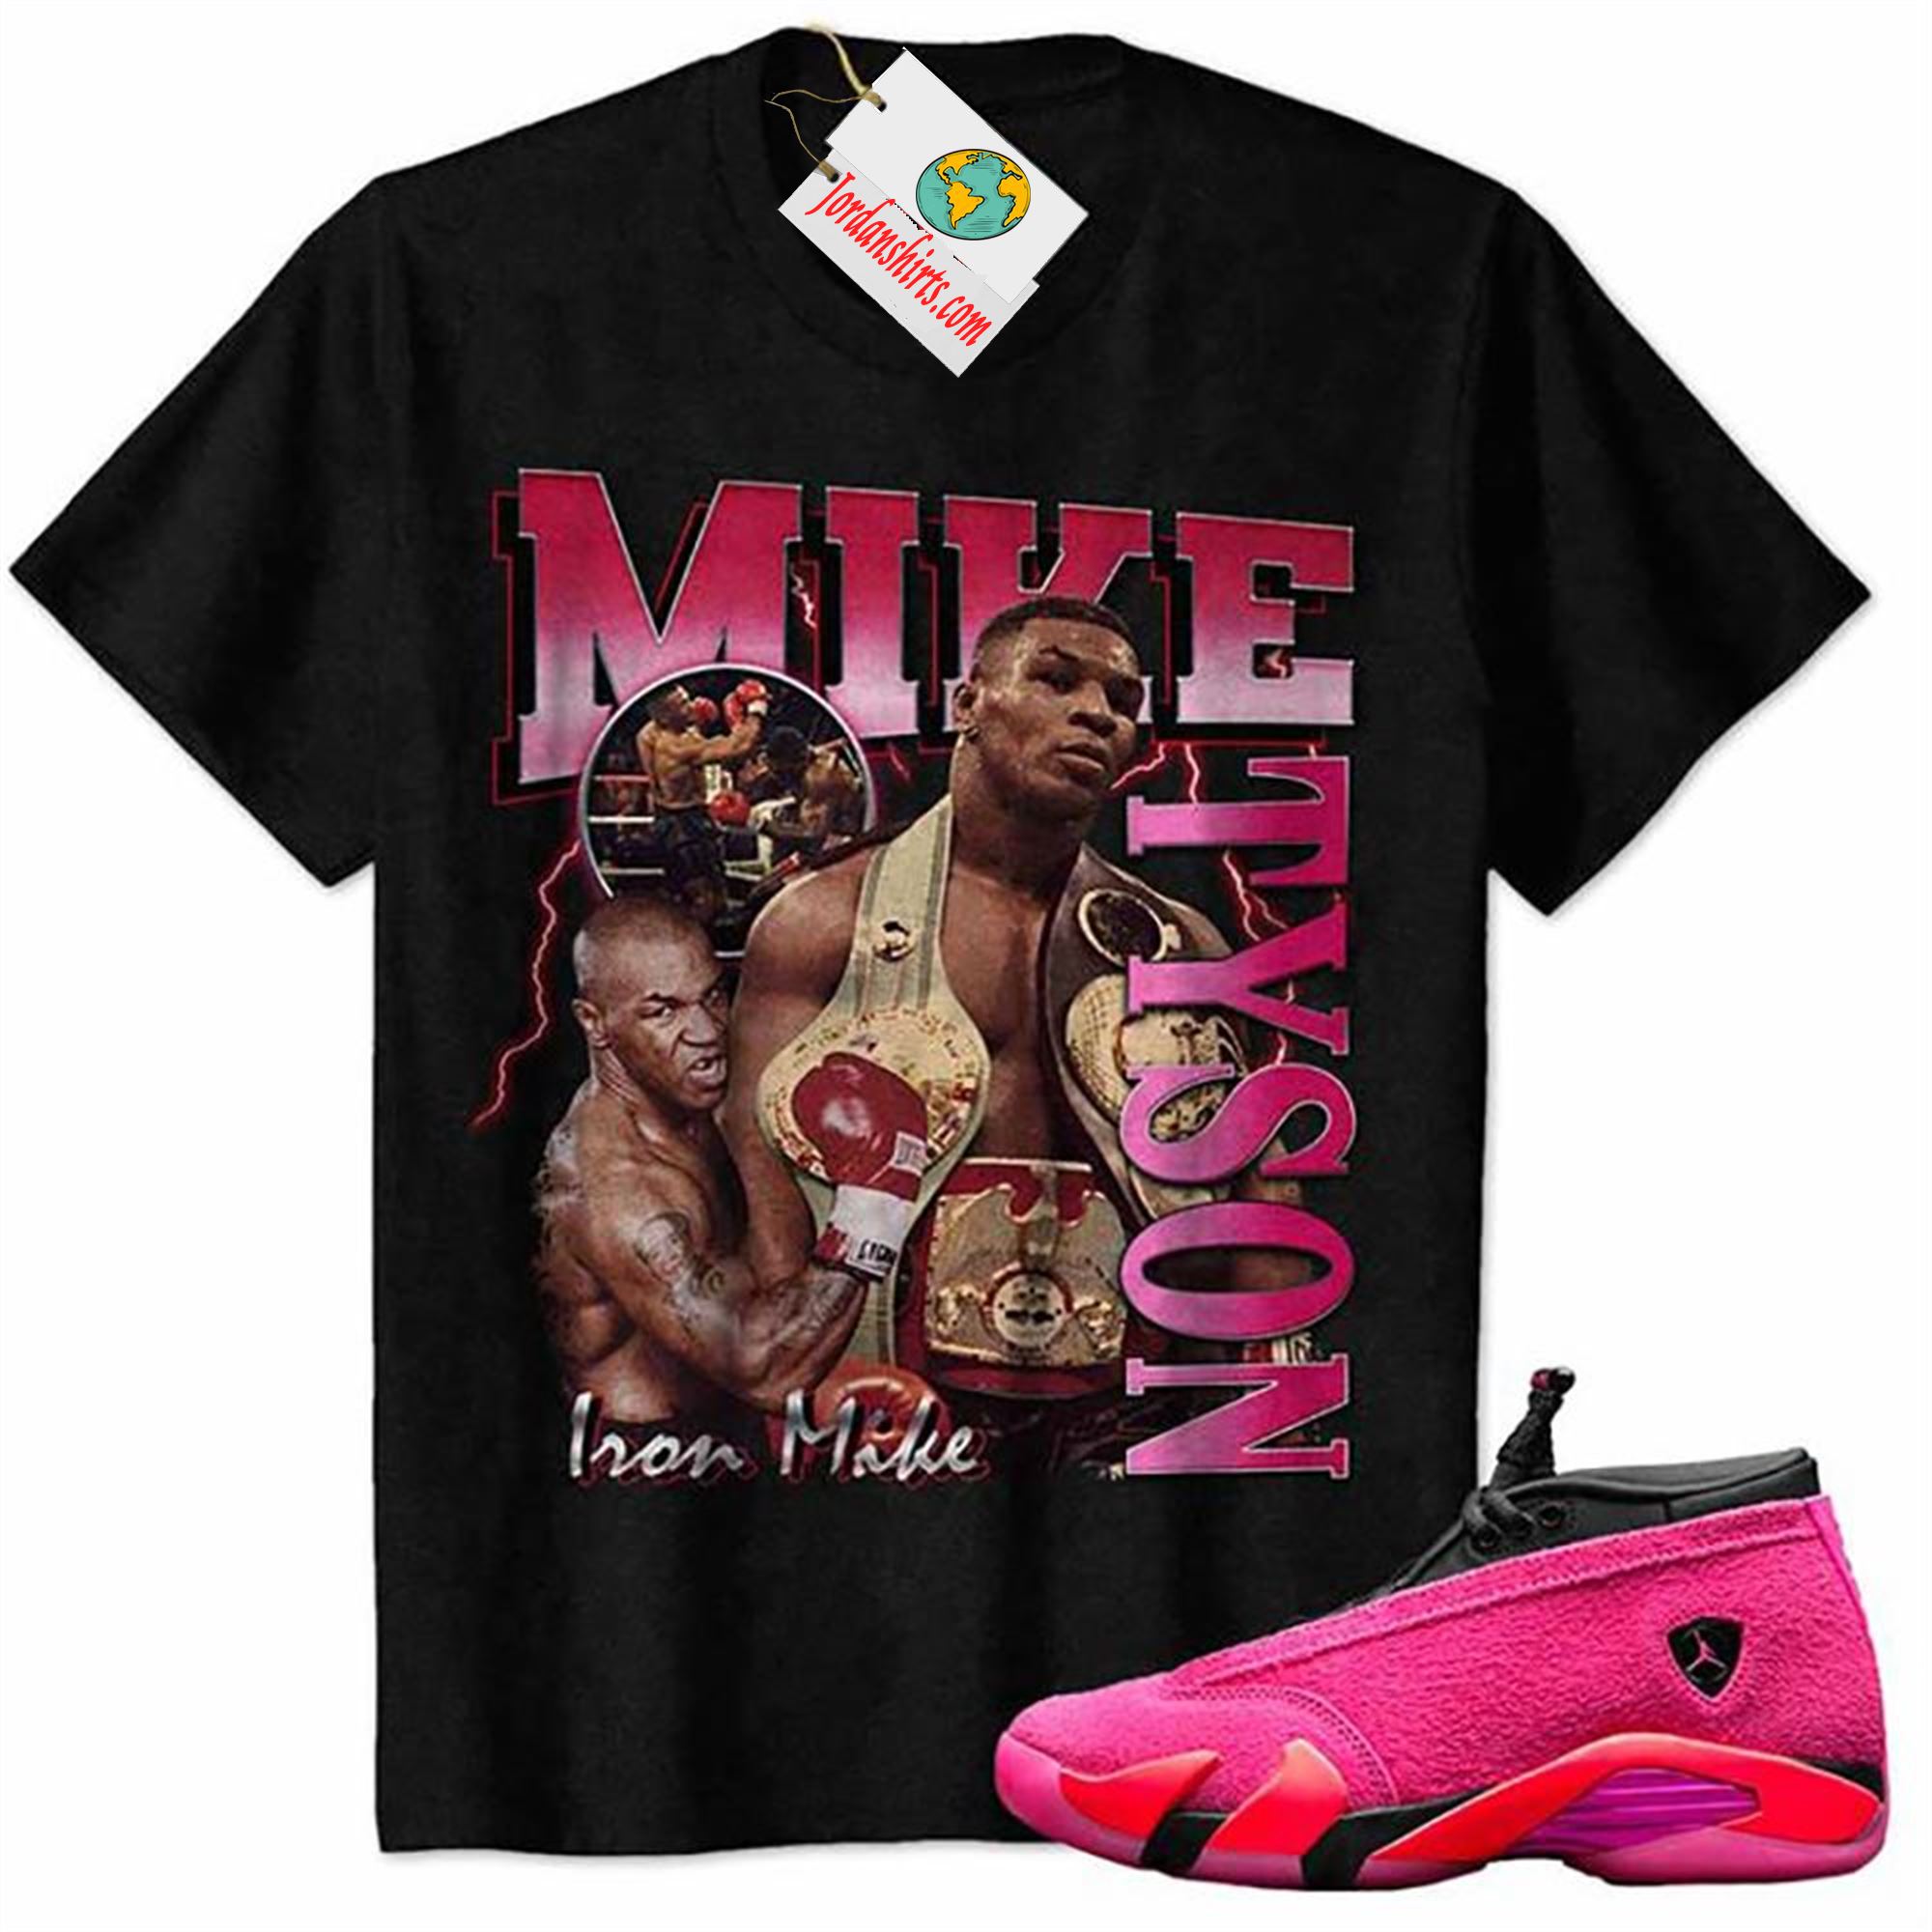 Jordan 14 Shirt, Mike Tyson Iron Man Black Air Jordan 14 Wmns Shocking Pink 14s Full Size Up To 5xl